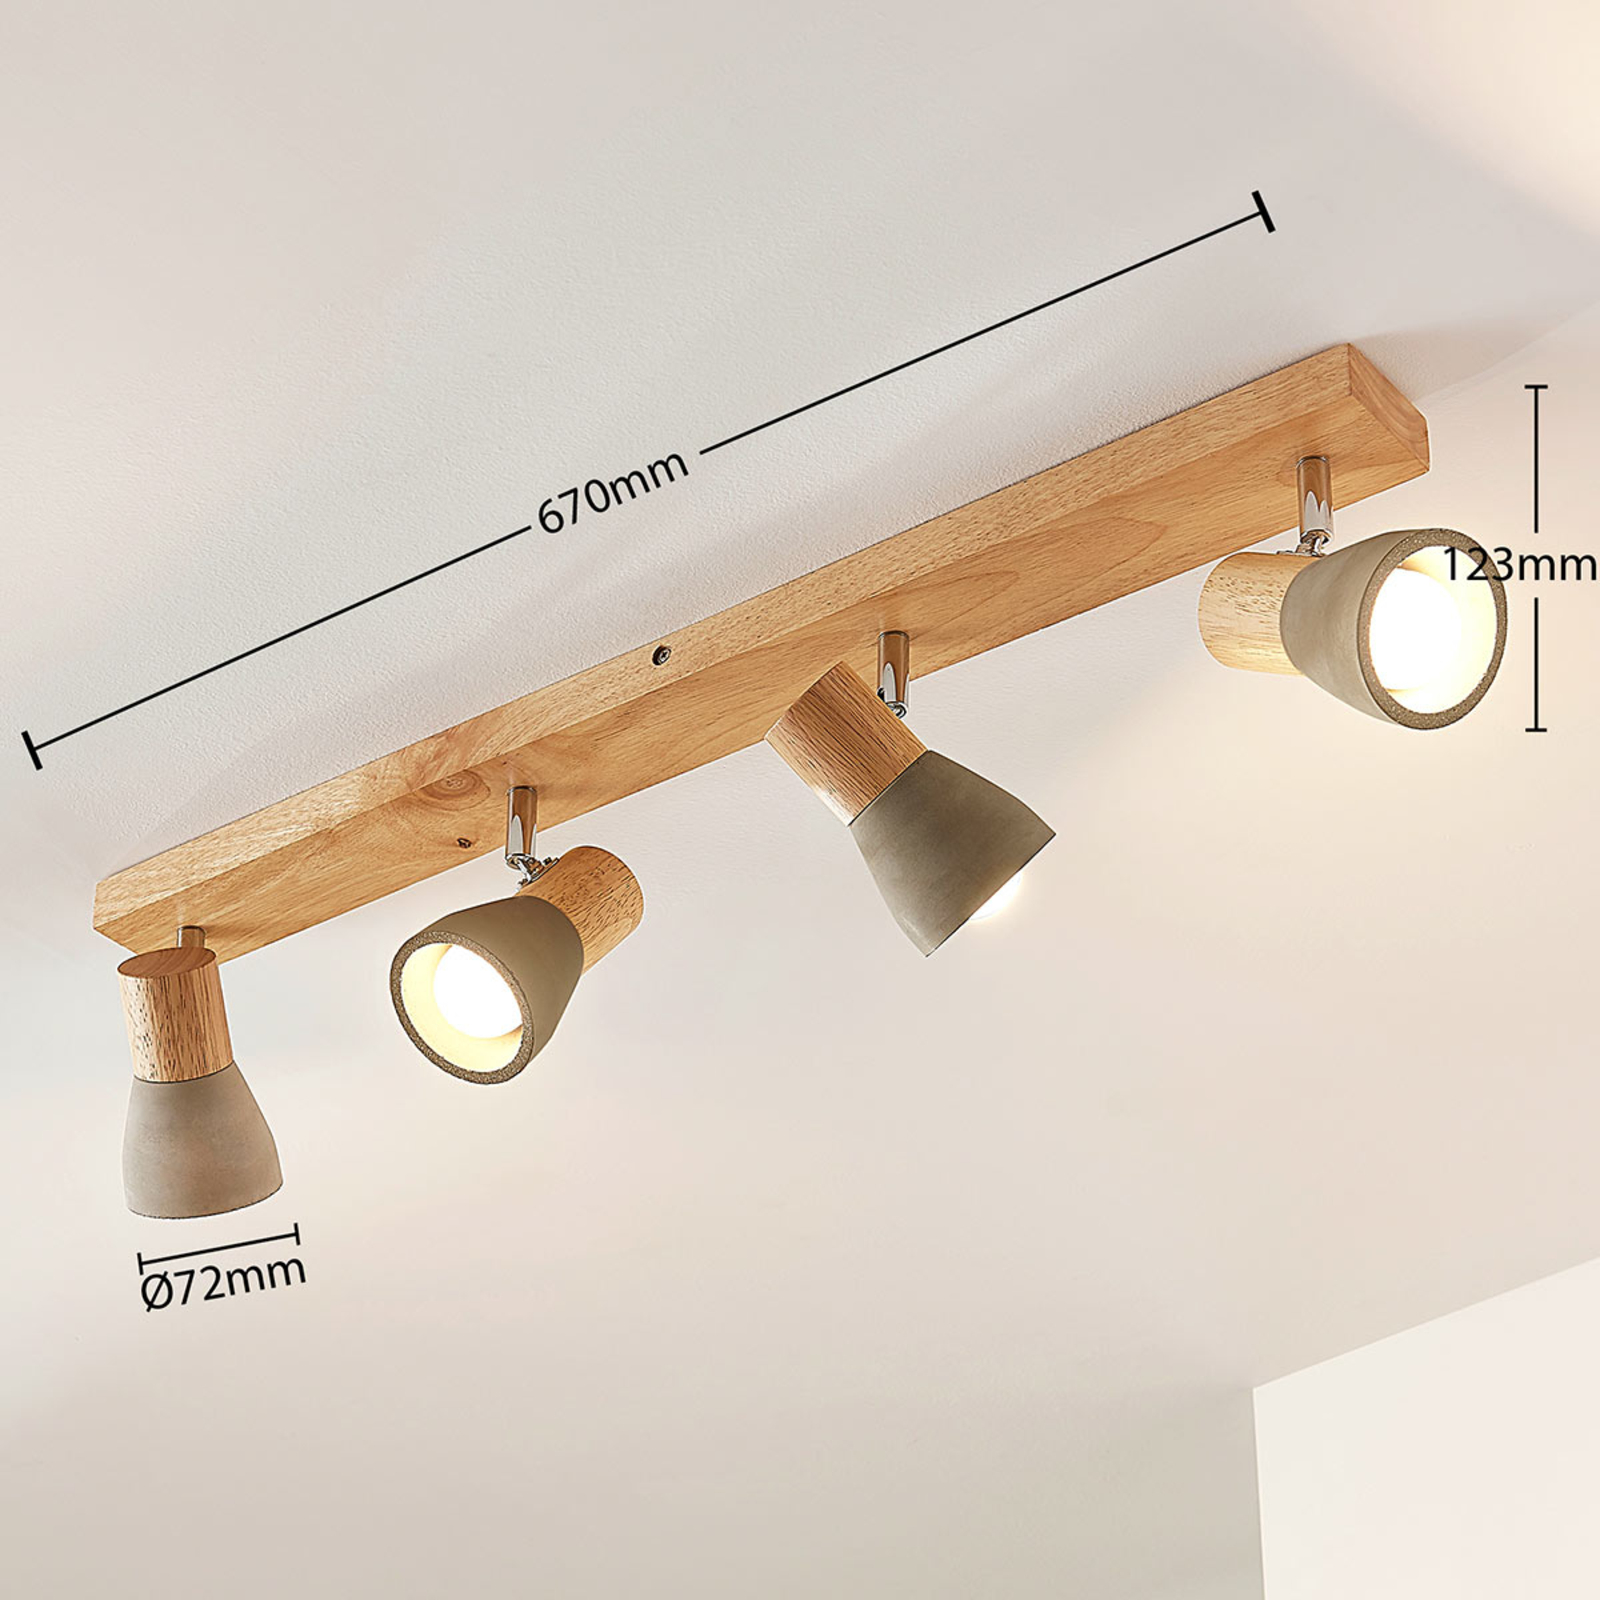 Filiz spotlight made of wood and concrete, 4-bulb